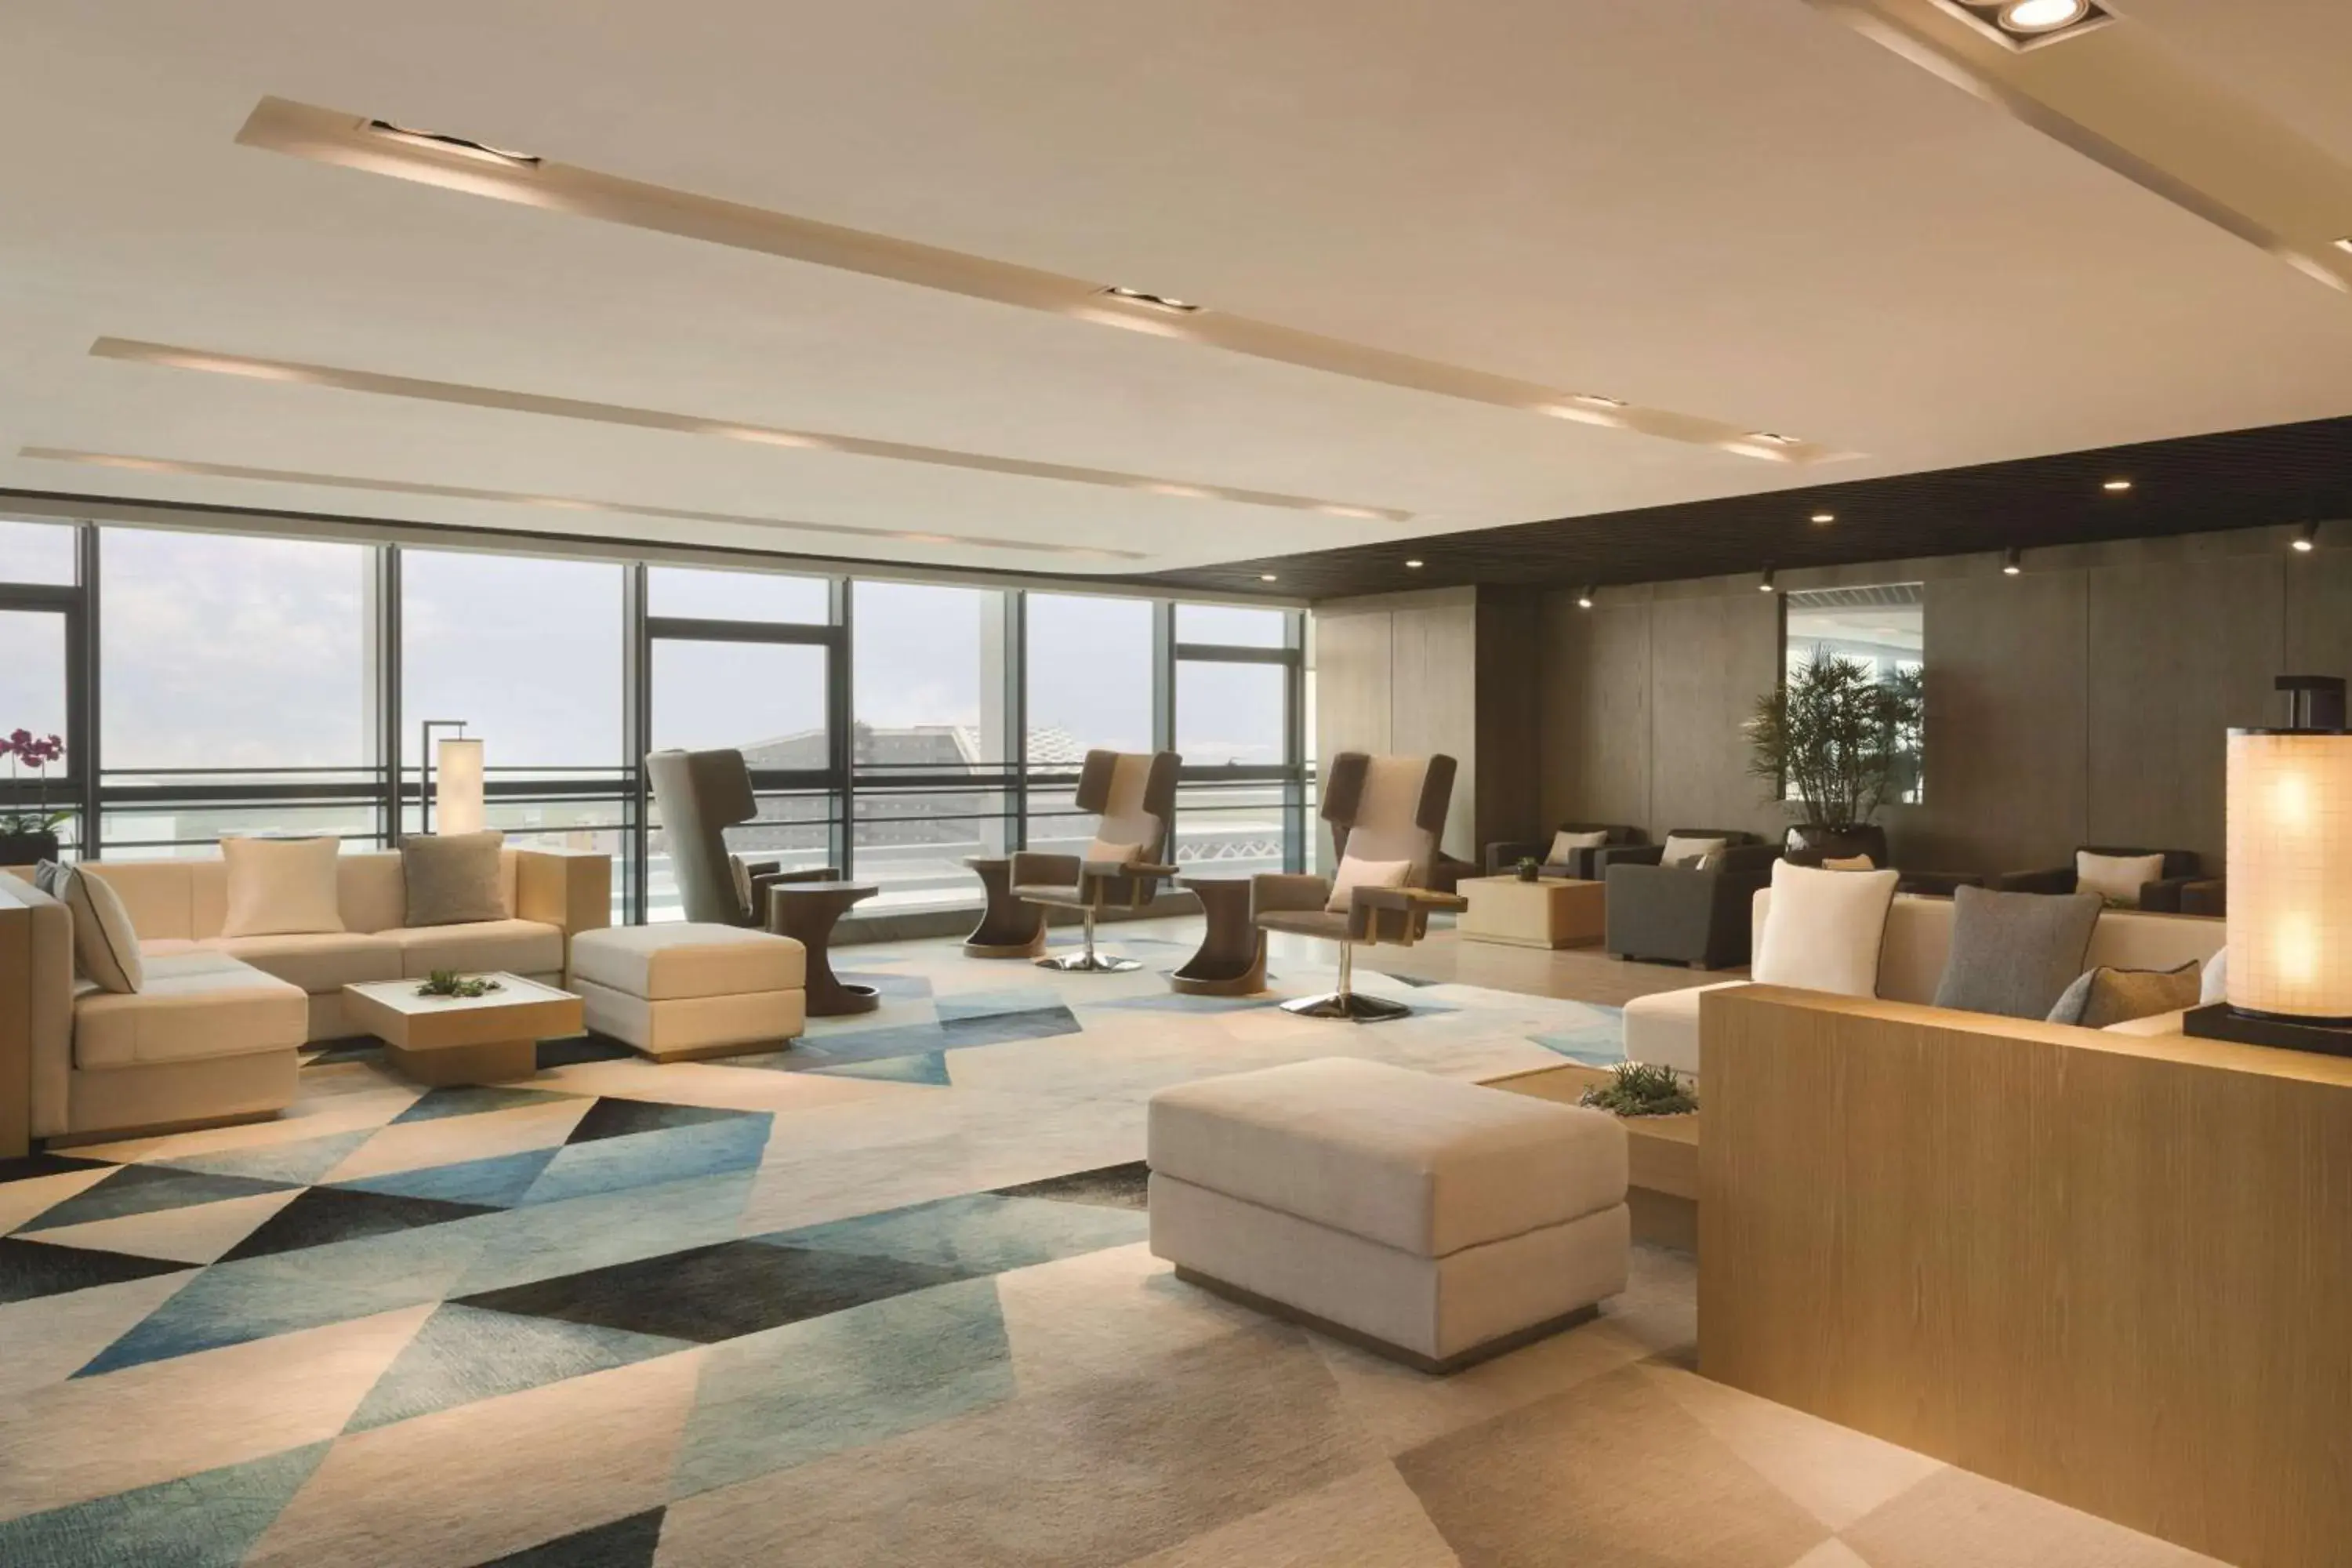 Lobby or reception in Hyatt House Shenzhen Airport